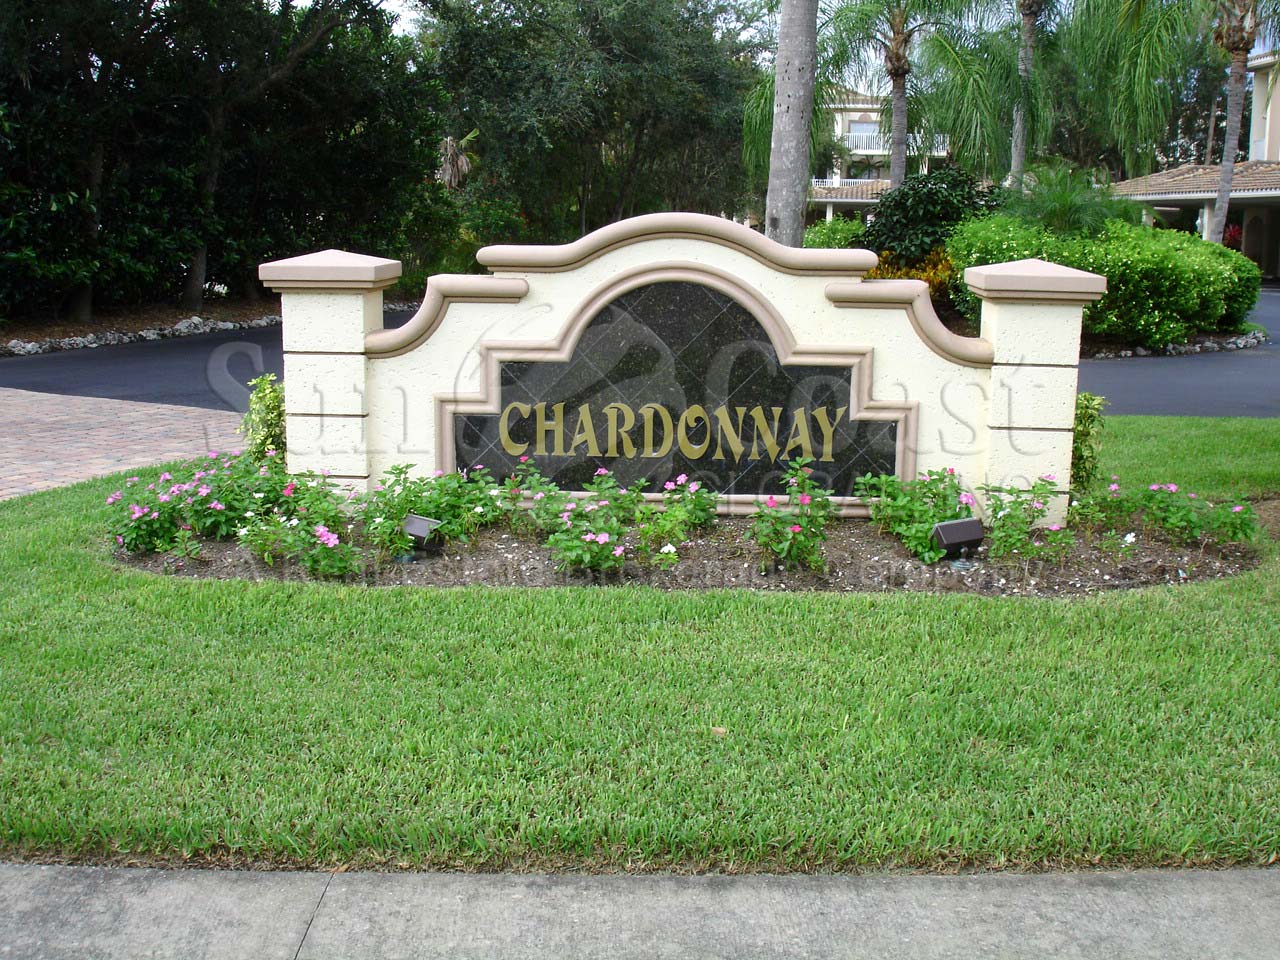 Chardonnay signage